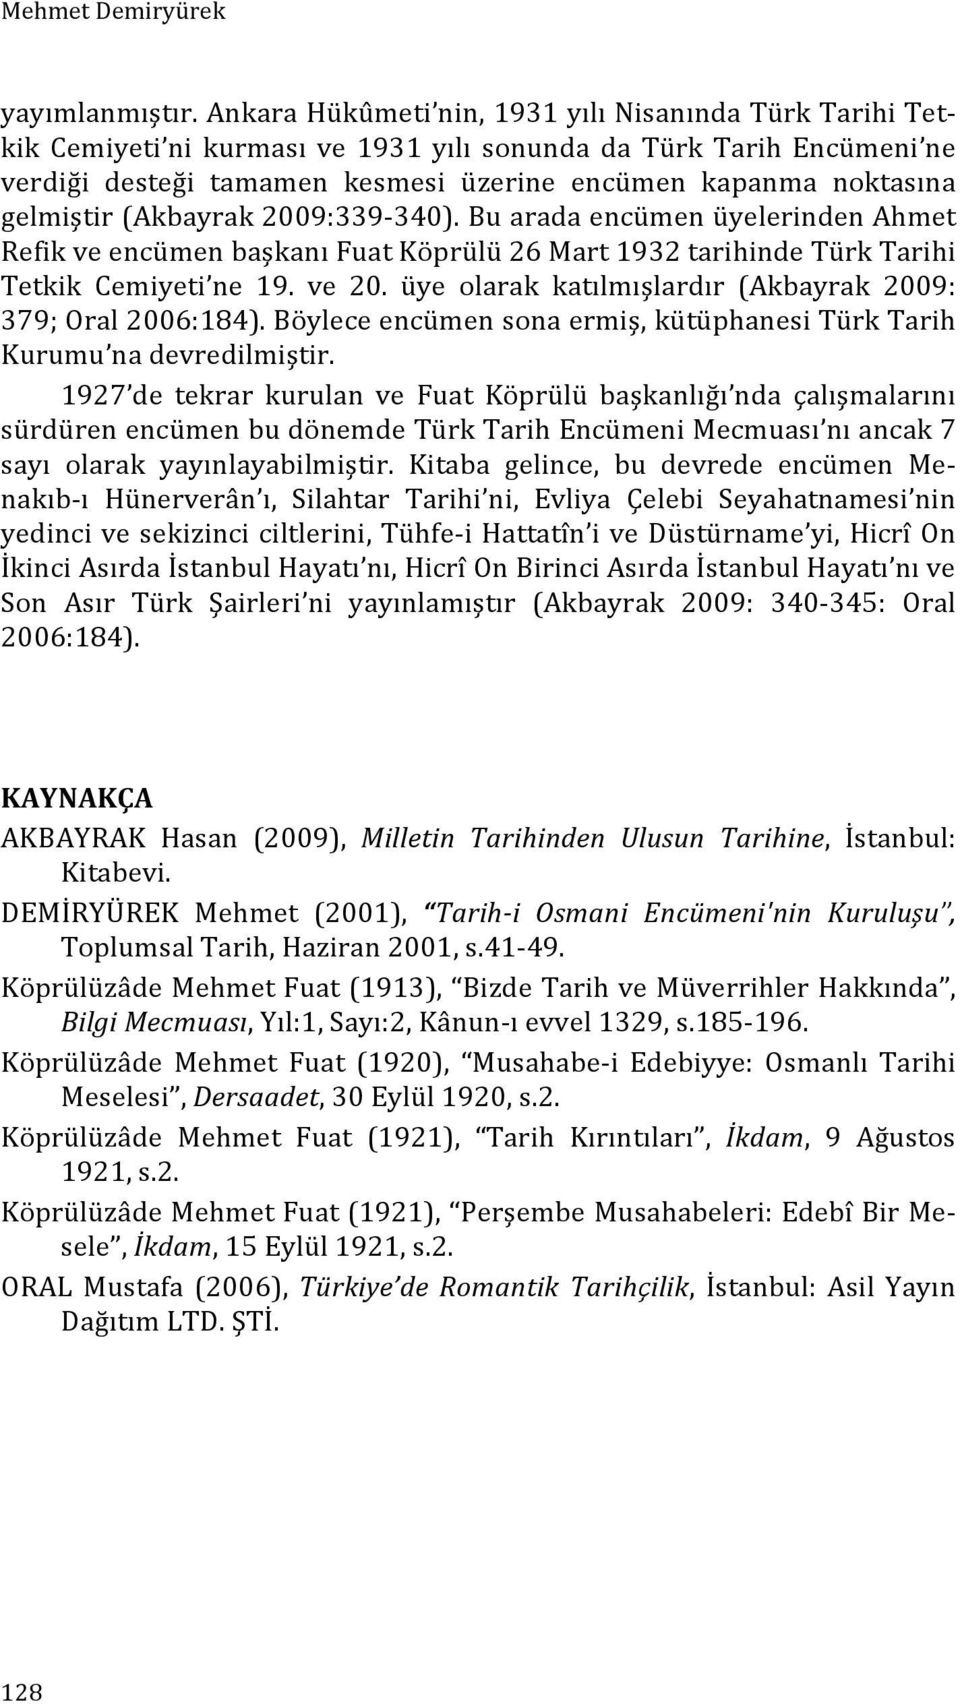 gelmiştir (Akbayrak 2009:339-340). Bu arada encümen üyelerinden Ahmet Refik ve encümen başkanı Fuat Köprülü 26 Mart 1932 tarihinde Türk Tarihi Tetkik Cemiyeti ne 19. ve 20.